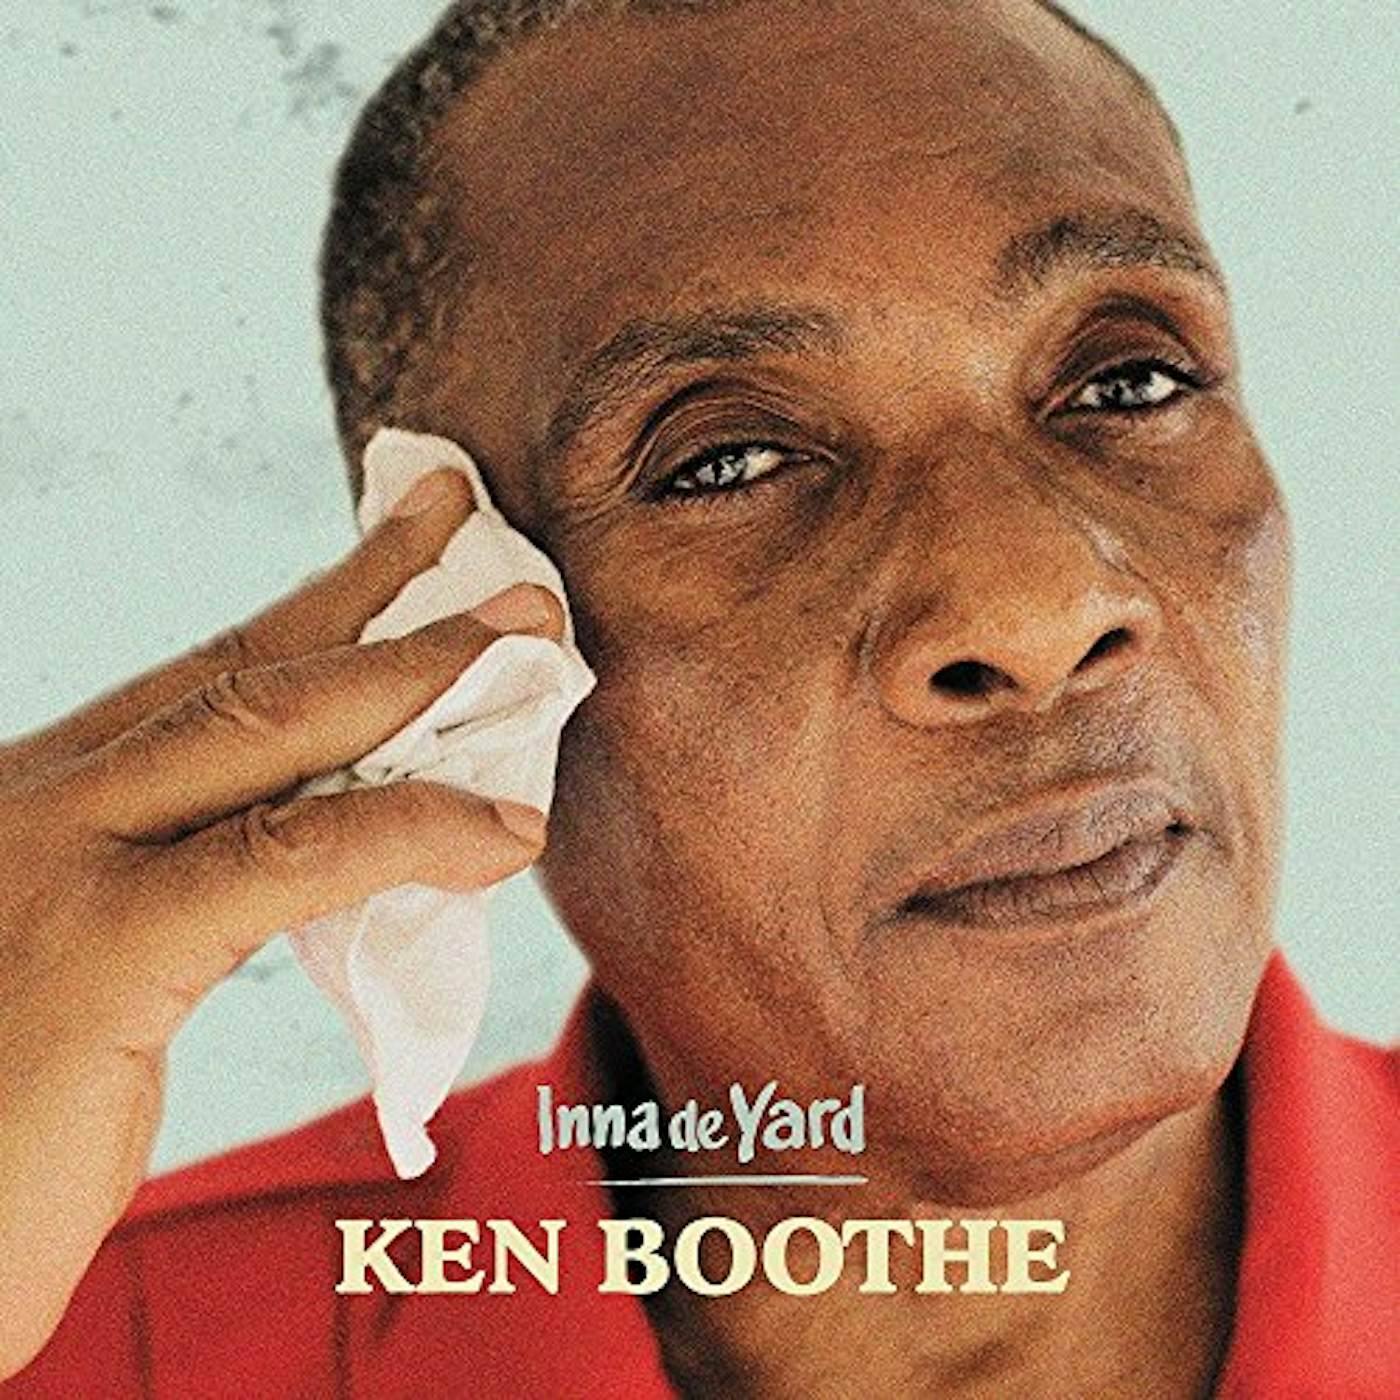 Ken Boothe INNA DE YARD CD